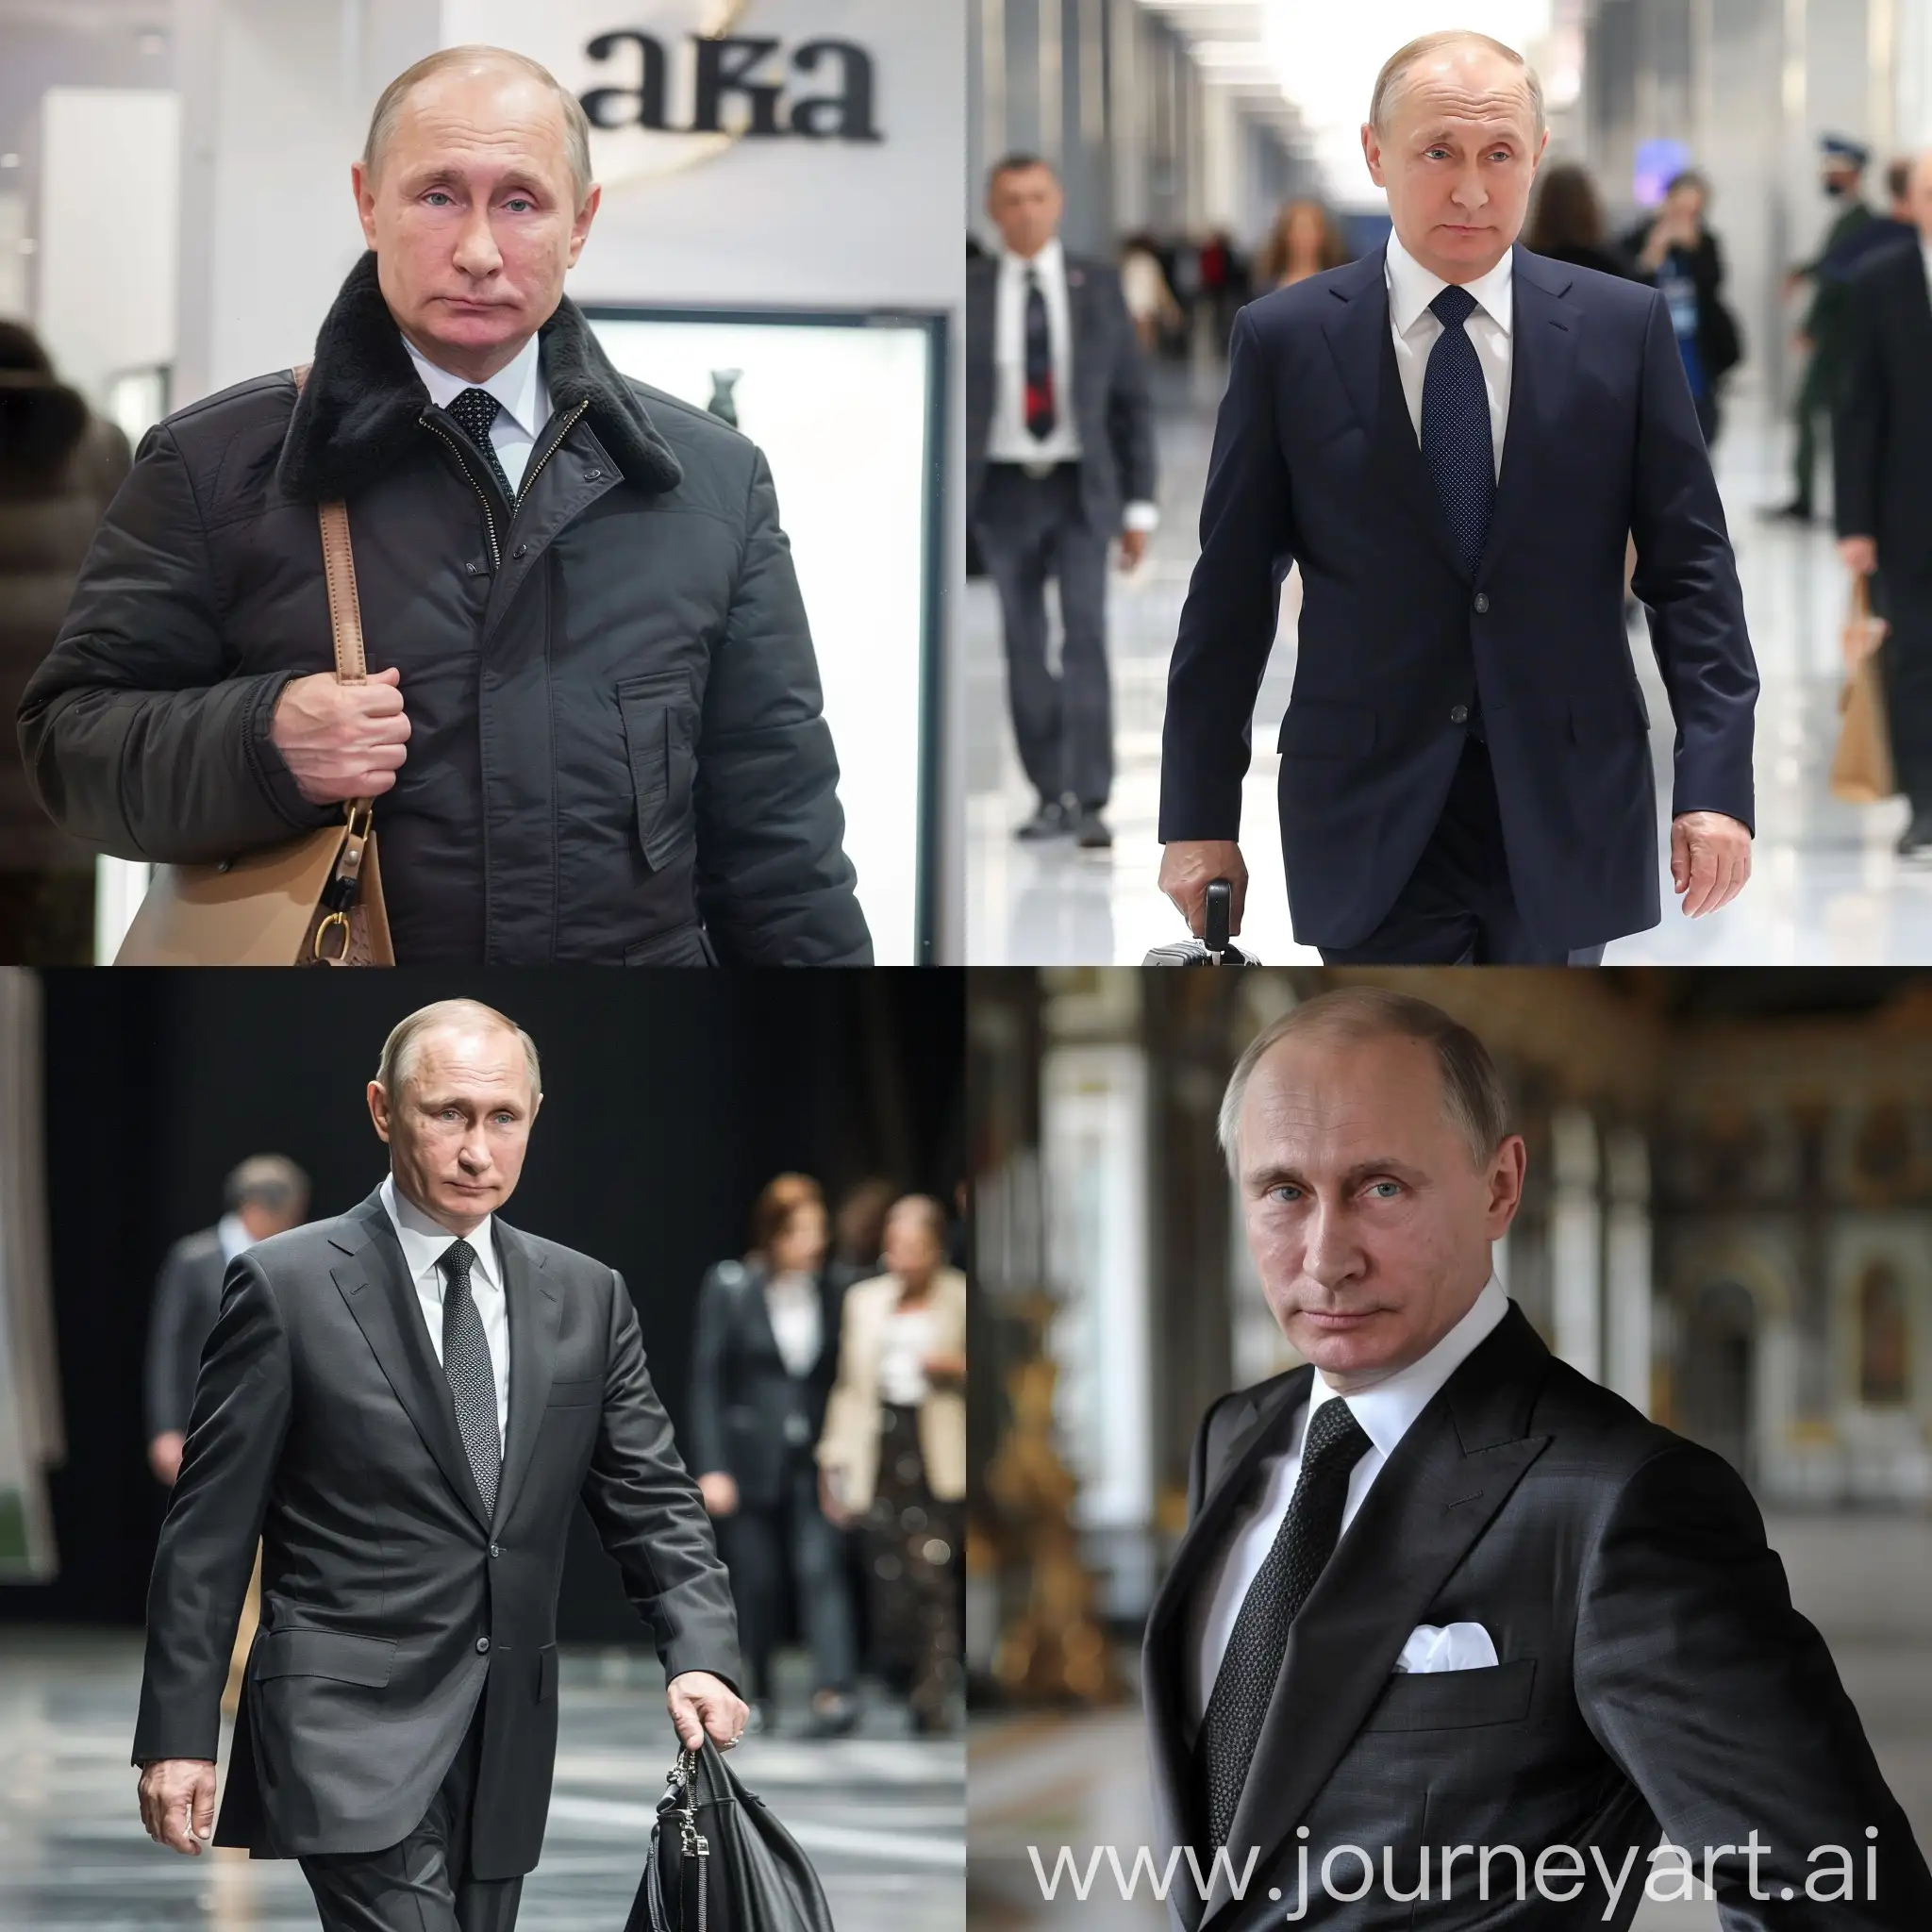 Putin in Balenciaga